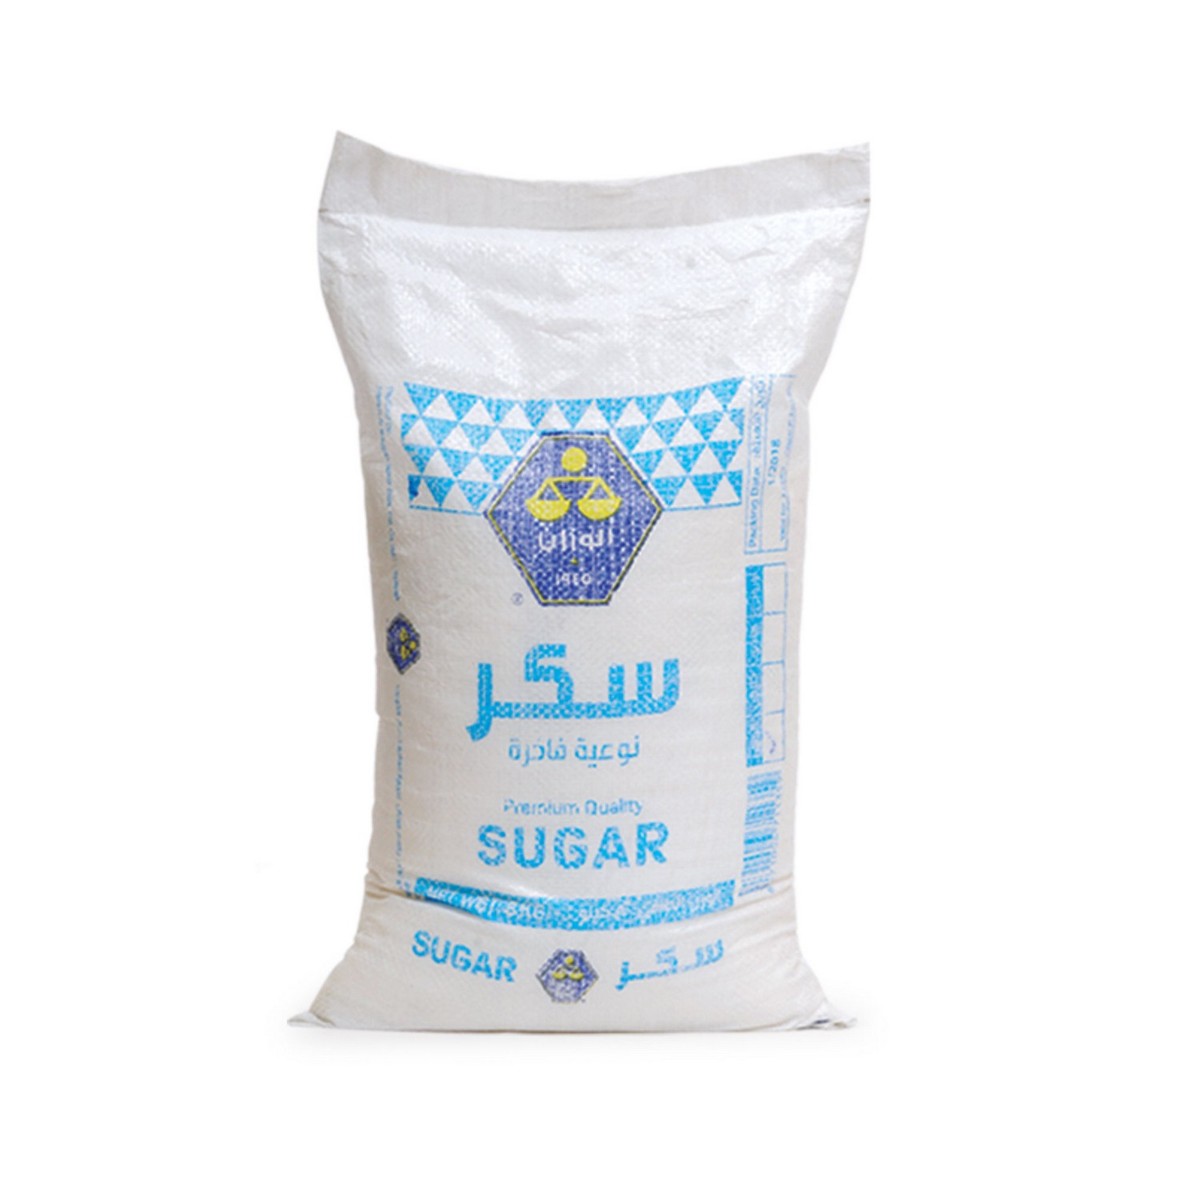 Buy Al wazzan Premium Quality Sugar 8kg Online at Best Price | White Sugar | Lulu Kuwait in Kuwait